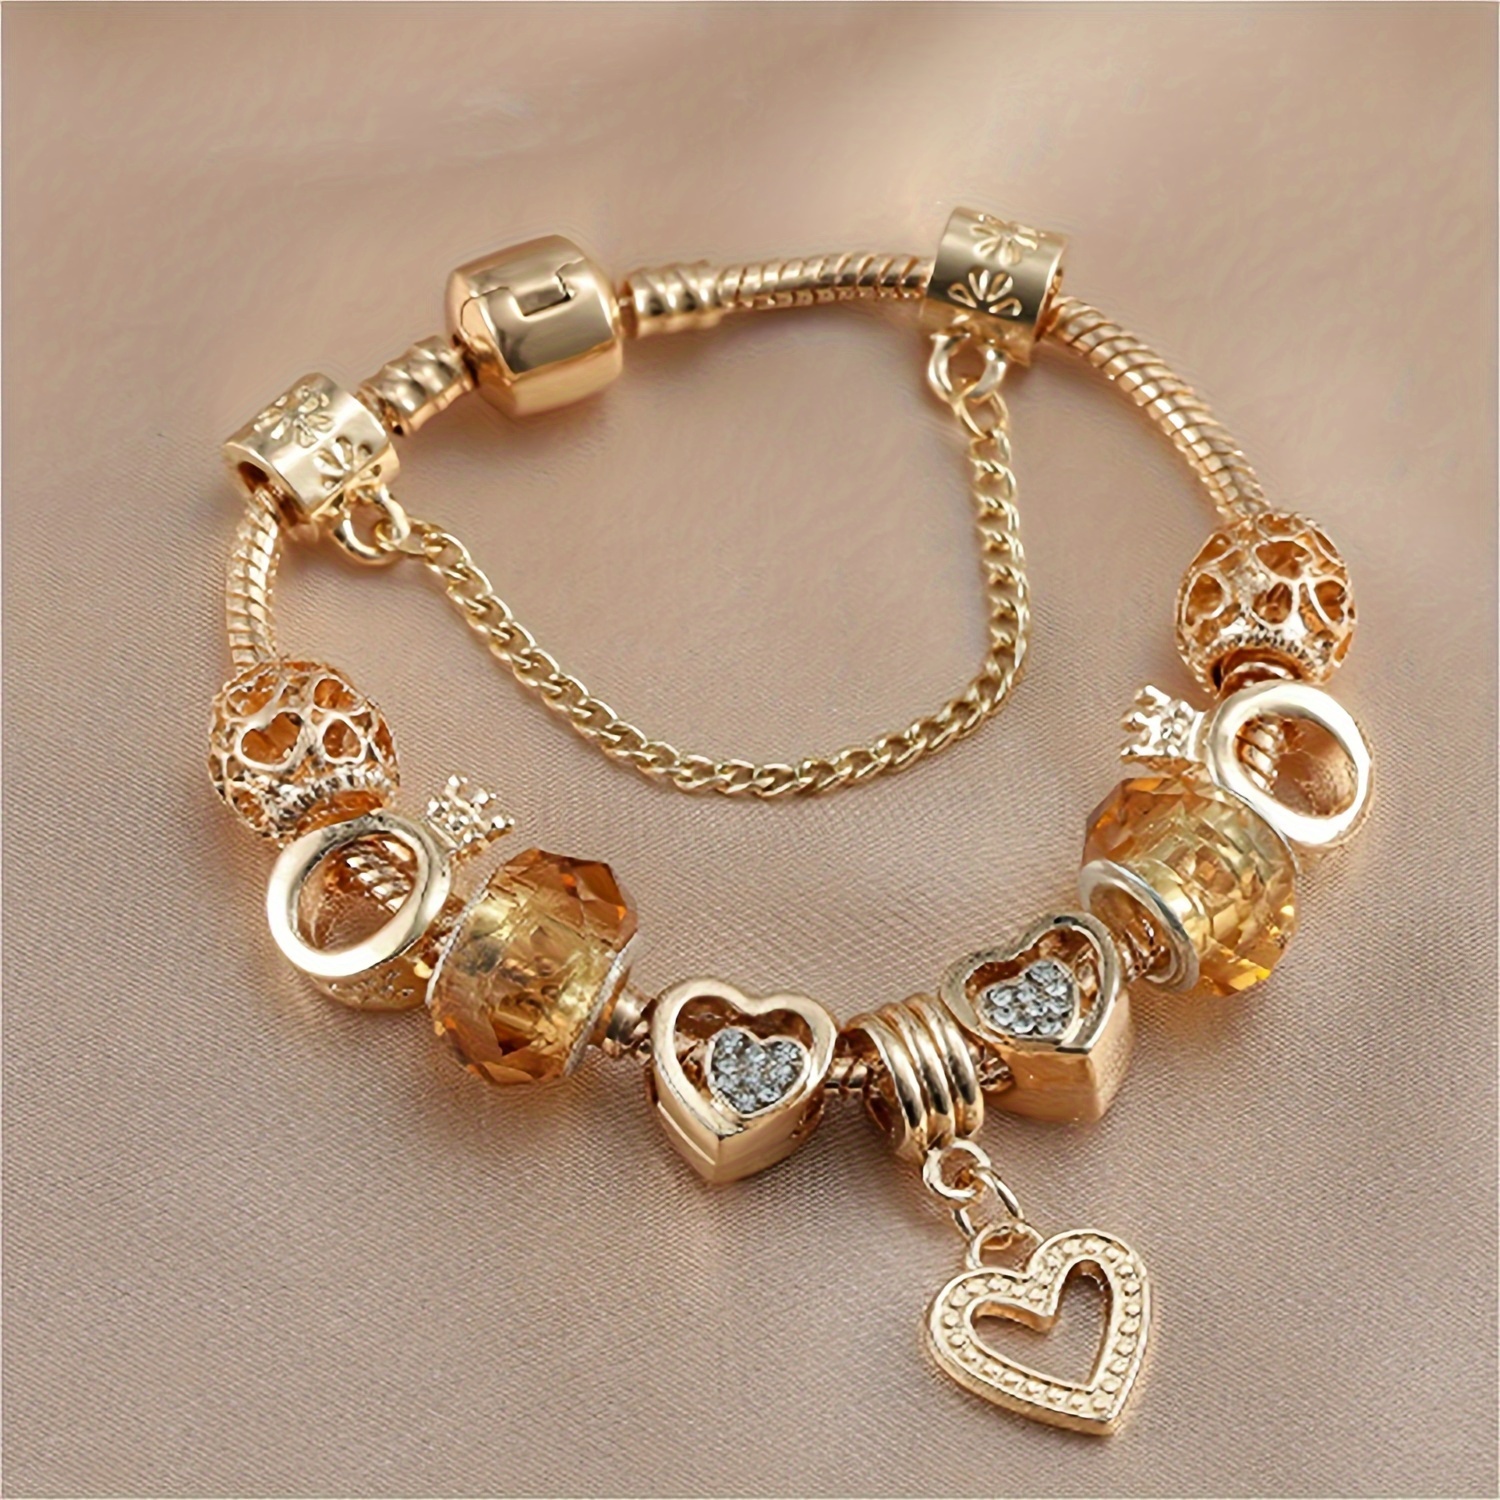 

Golden Charm Bracelet, Heart Pendants Beaded Snake Chain Crystal Design Versatile Jewelry Gift For Women